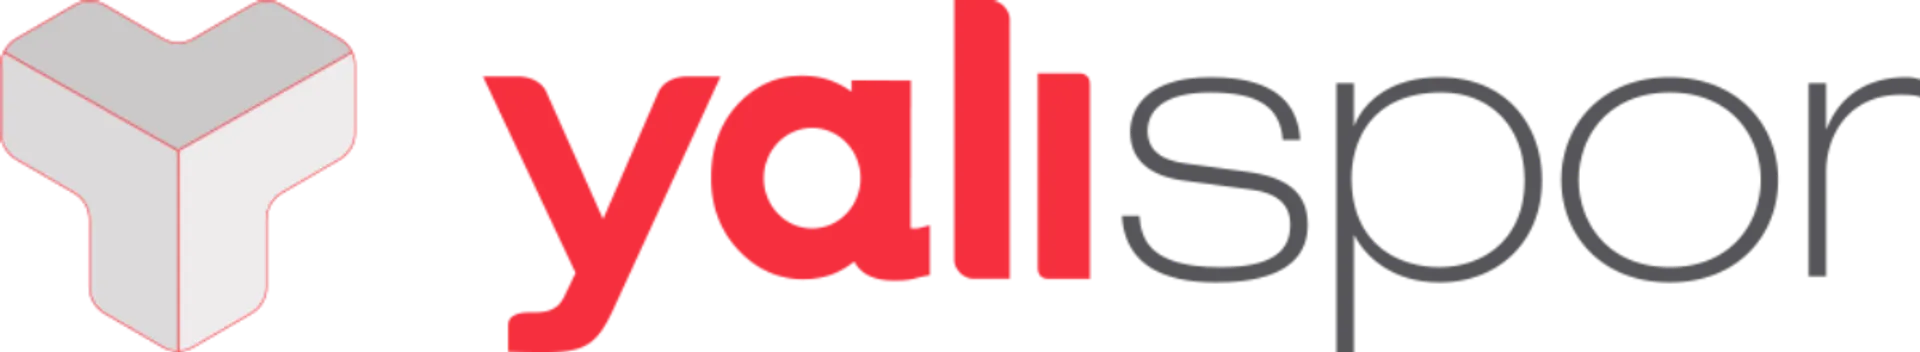 YALI SPOR logo